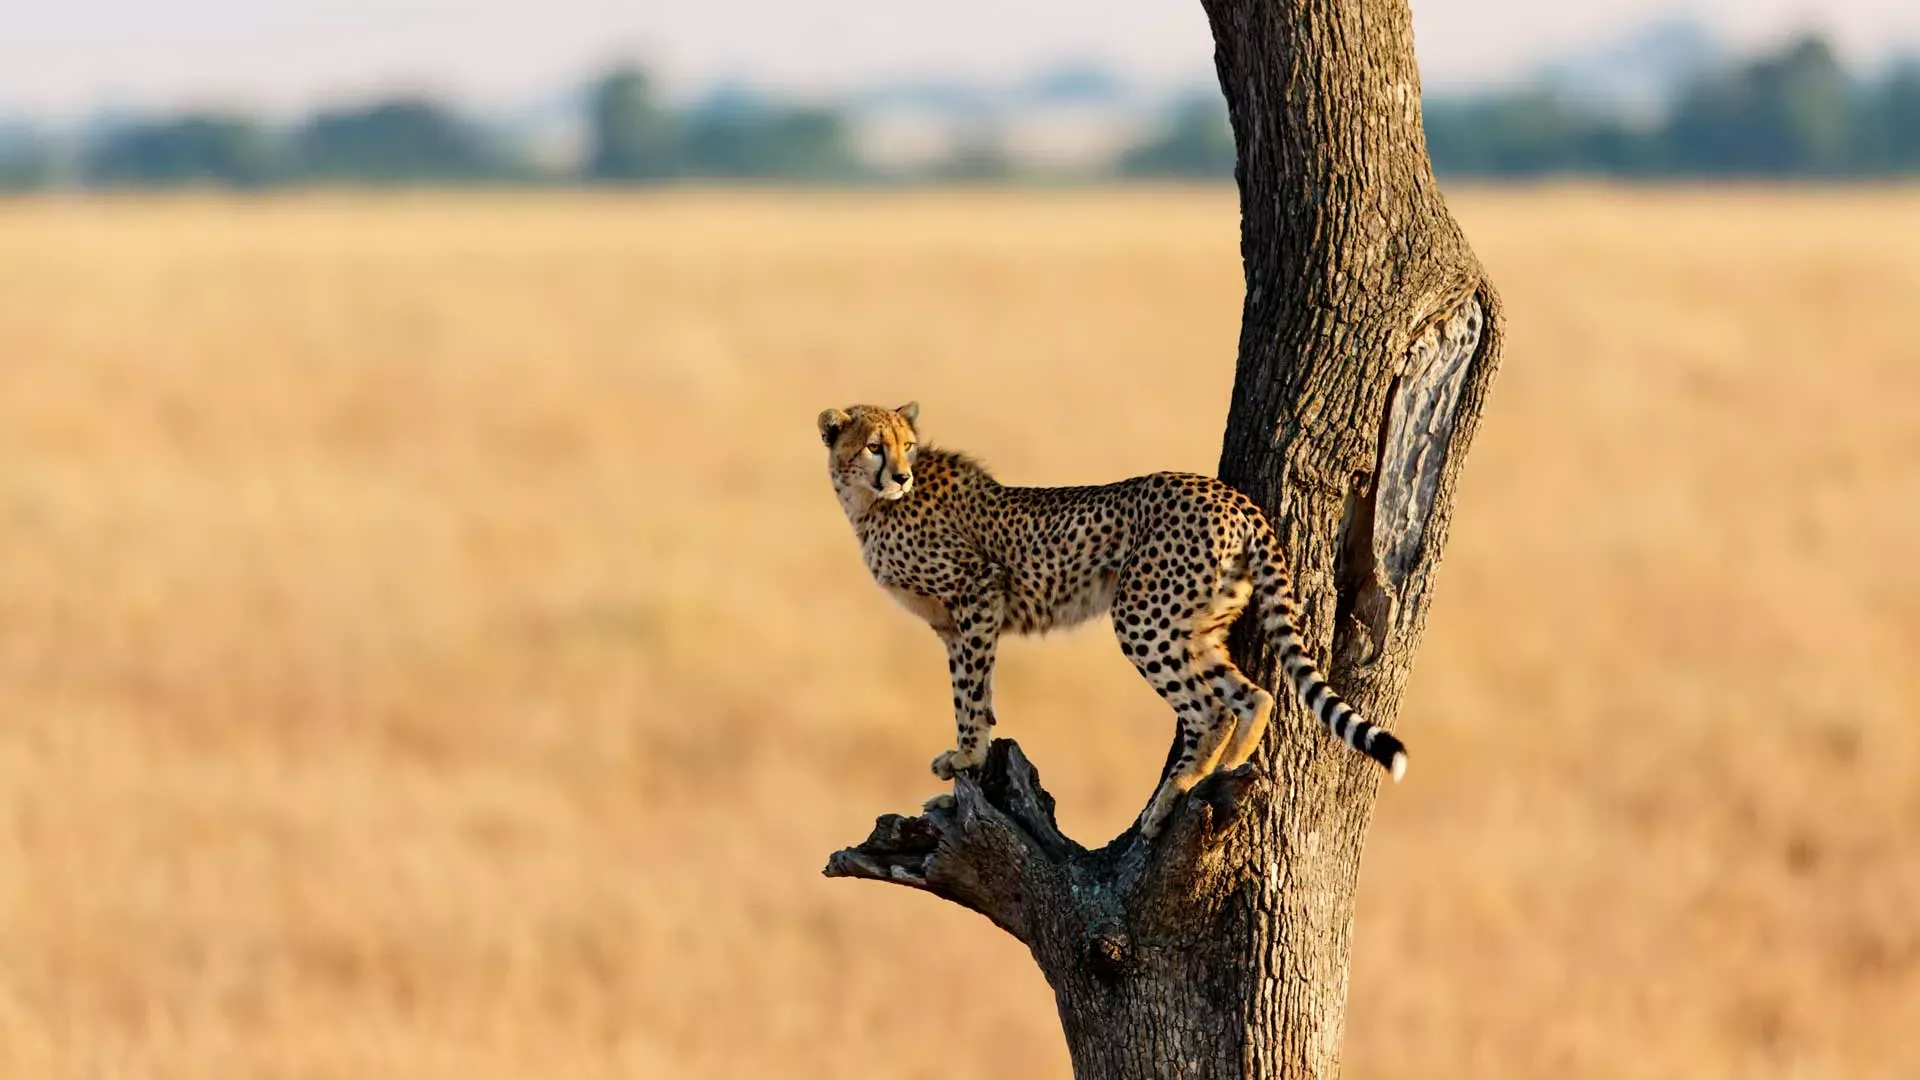 safaris to Kenya - cheetah on tree